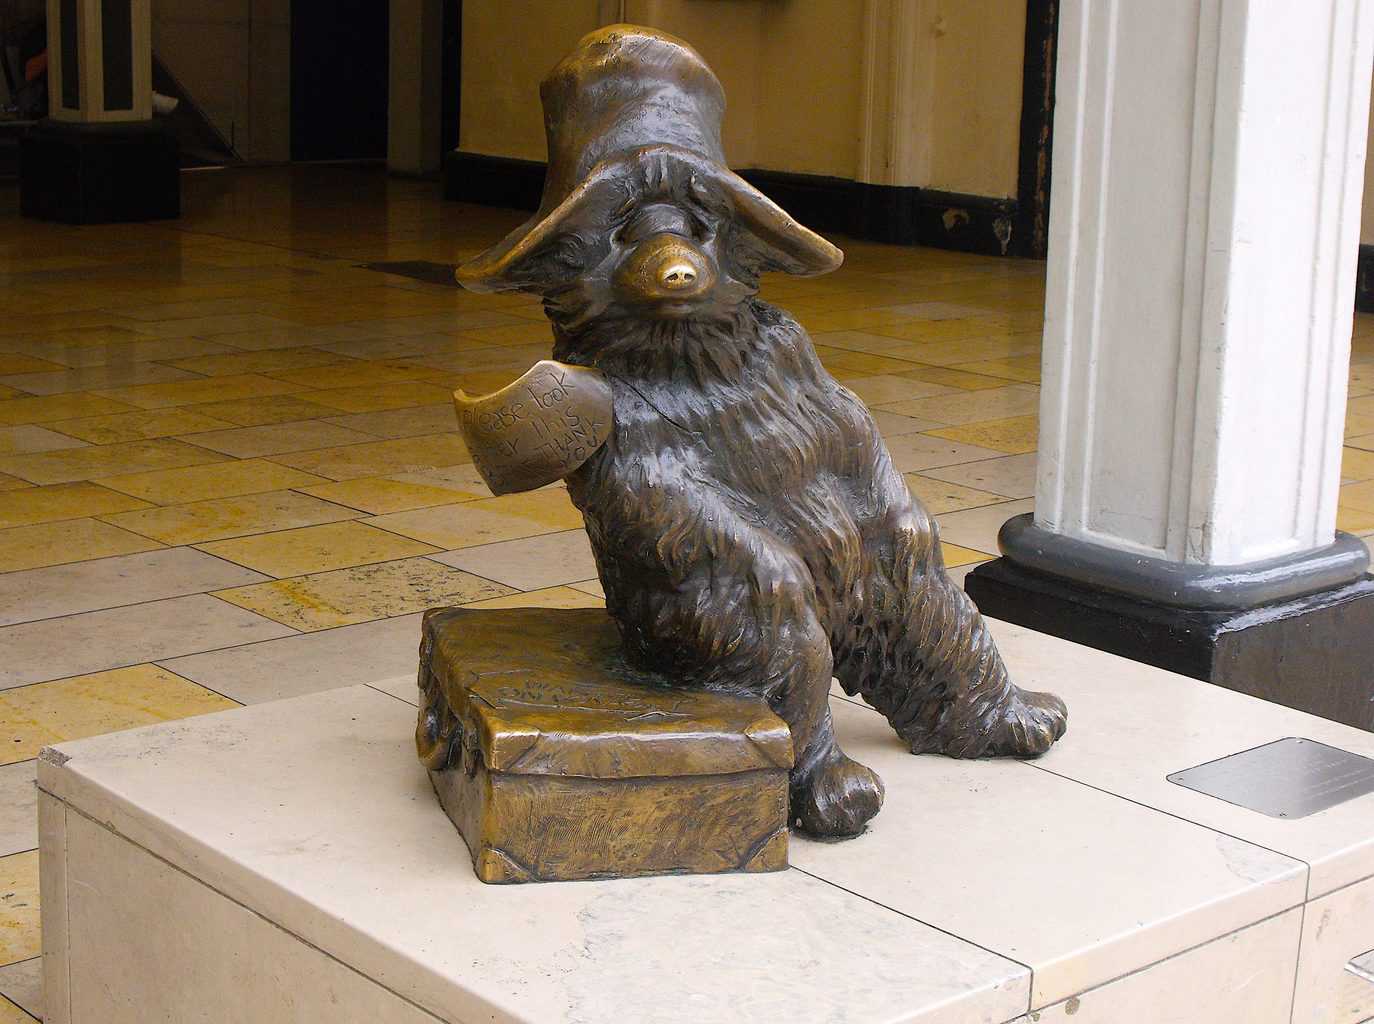 Visit the Paddington Bear statue at Paddington station in London.